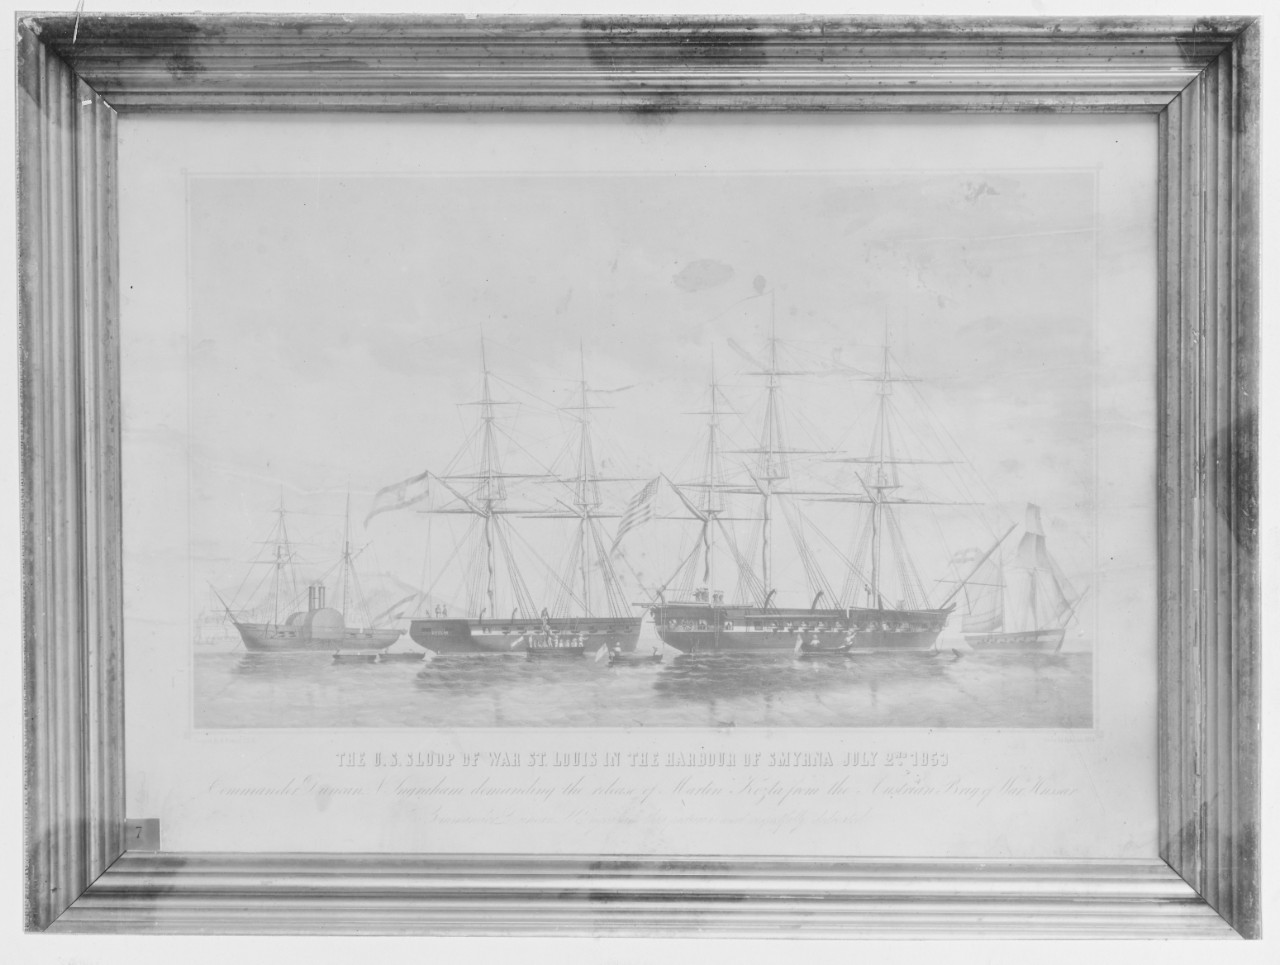 U.S. sloop of war ST. LOUIS (1827-1906)